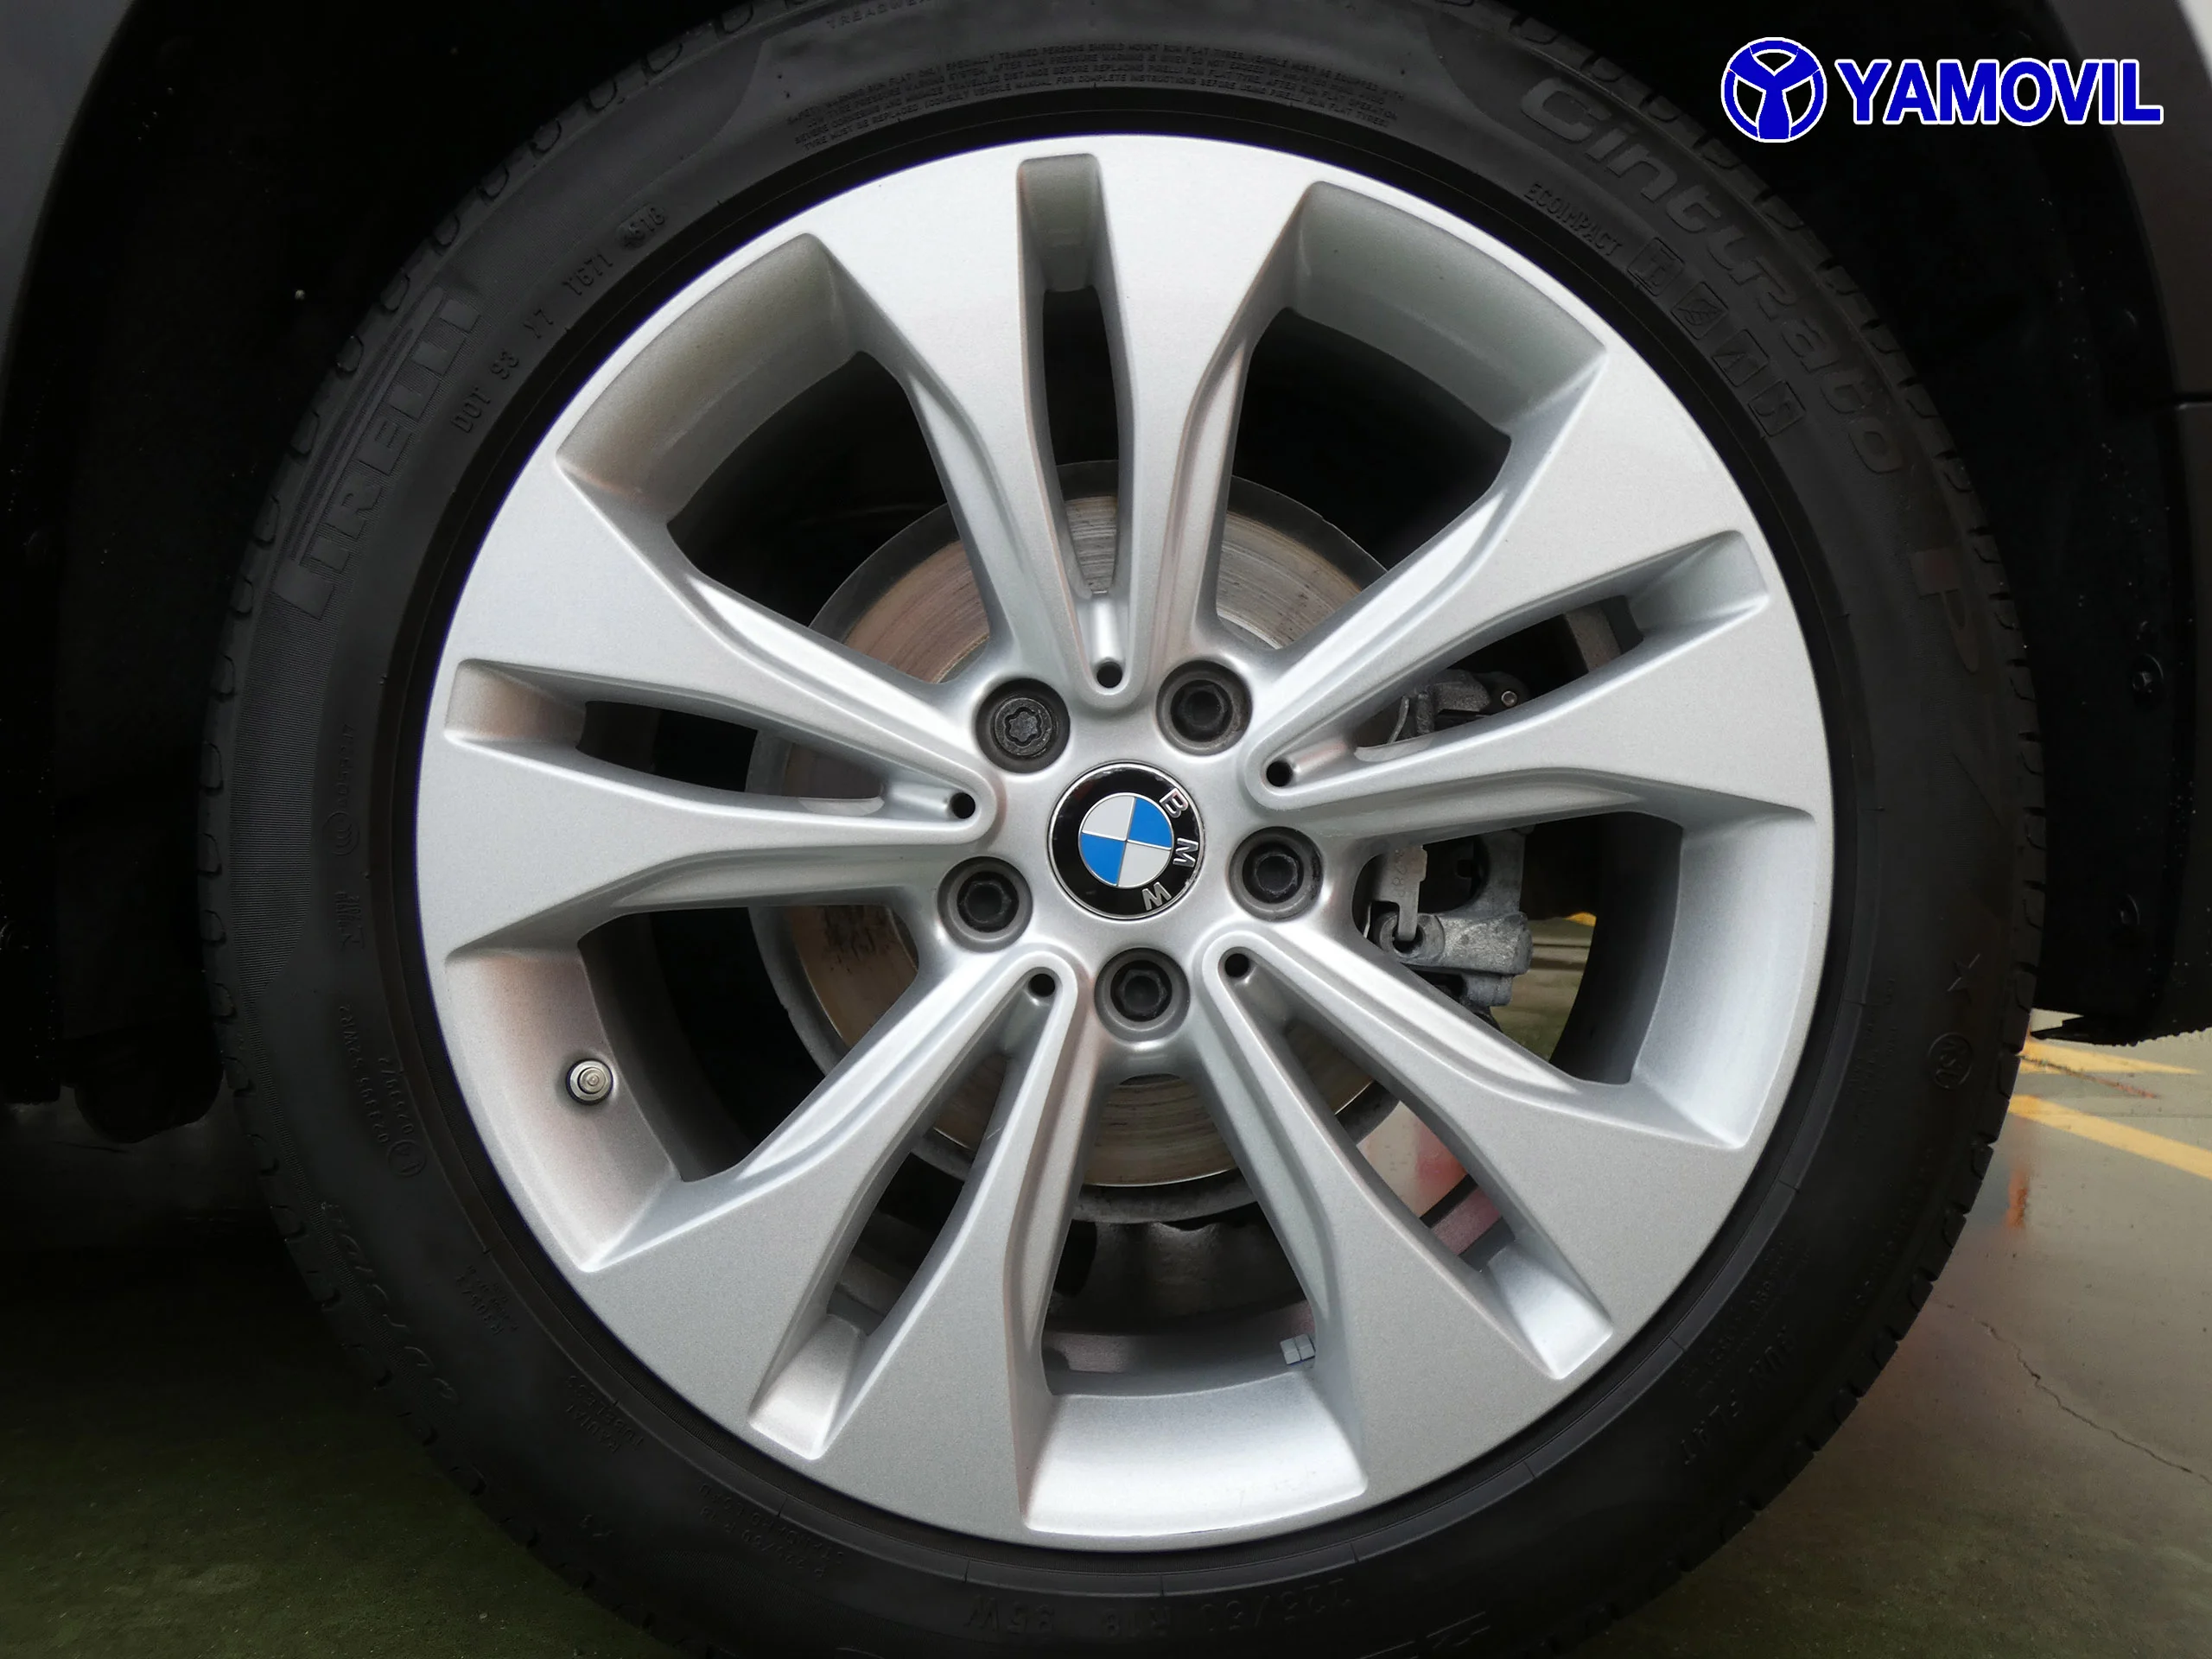 BMW X1 1.8I PACK NAVEGADOR 5P - Foto 7